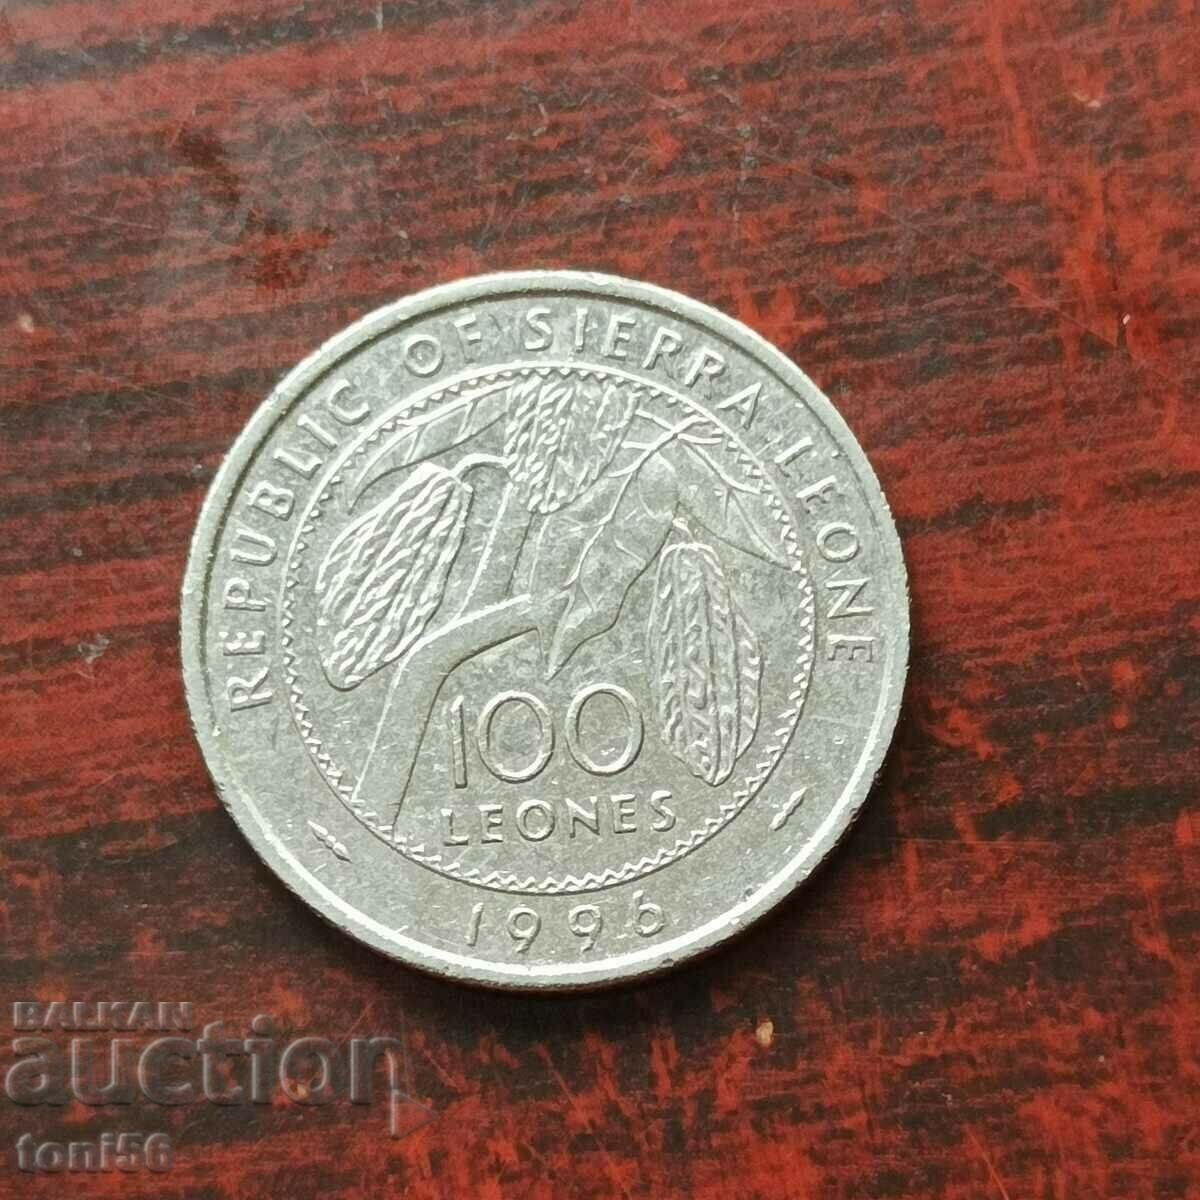 Sierra Leone 100 Leonese 1996 UNC